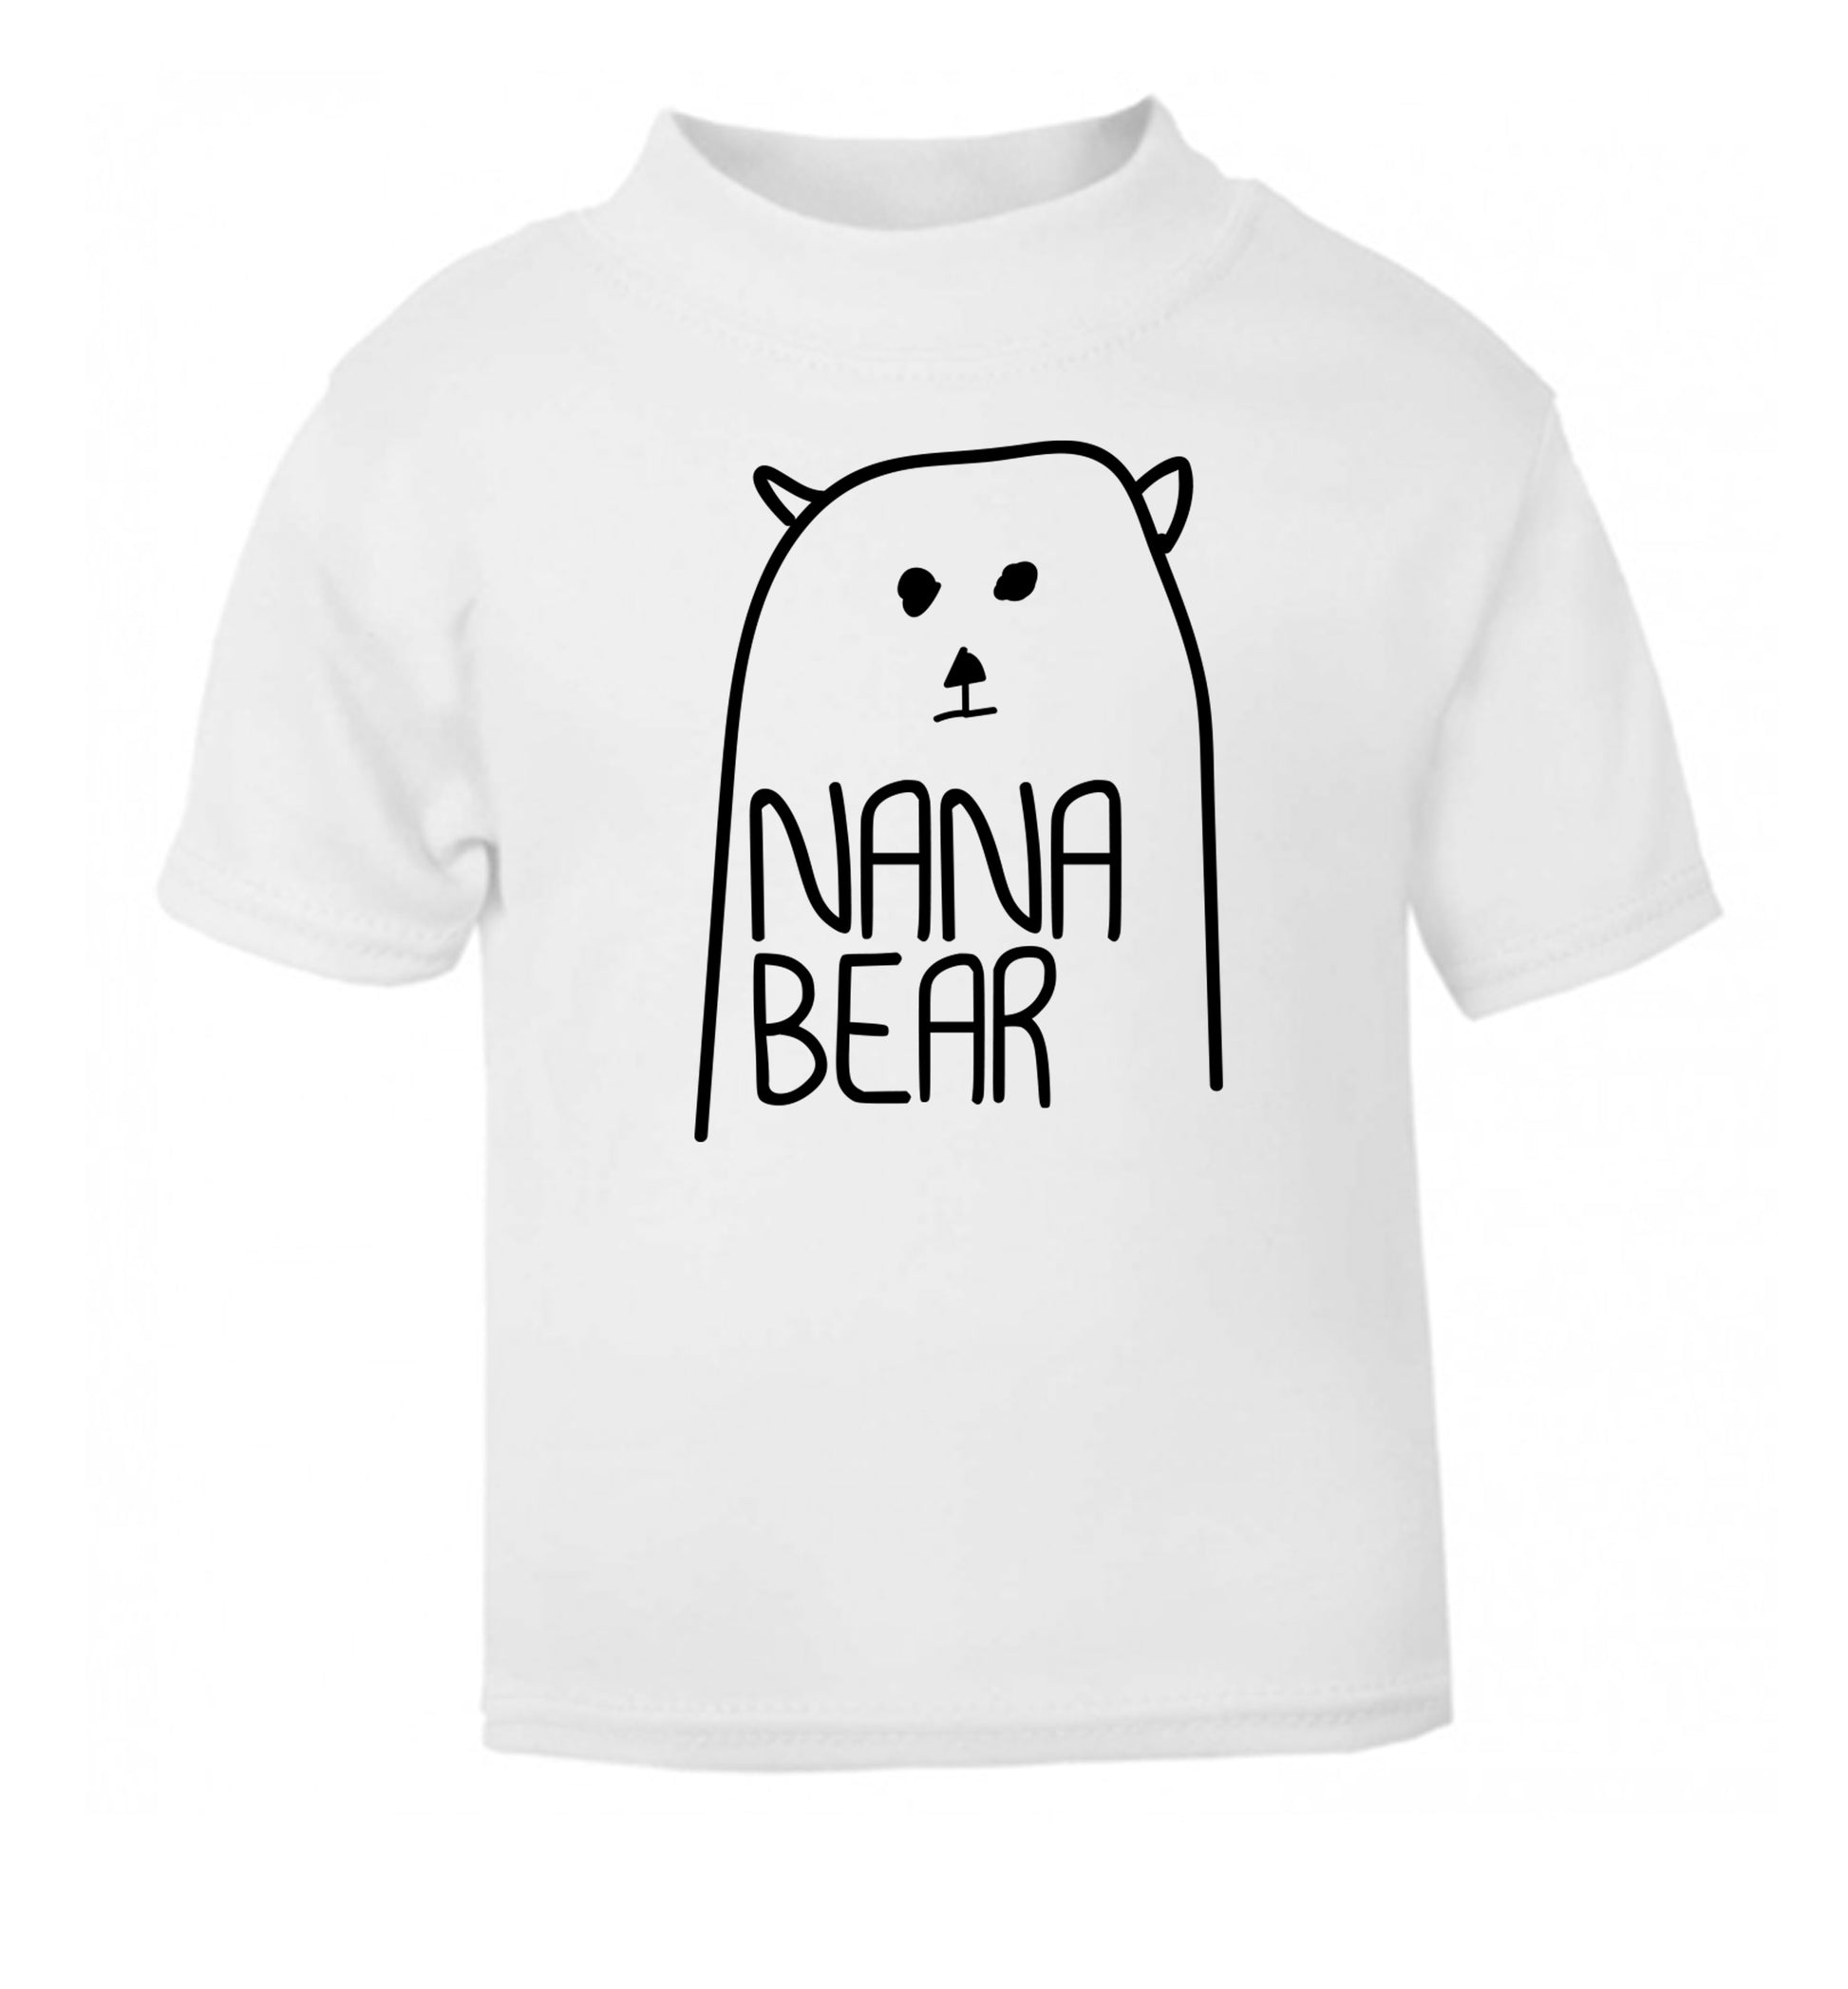 Nana bear white Baby Toddler Tshirt 2 Years